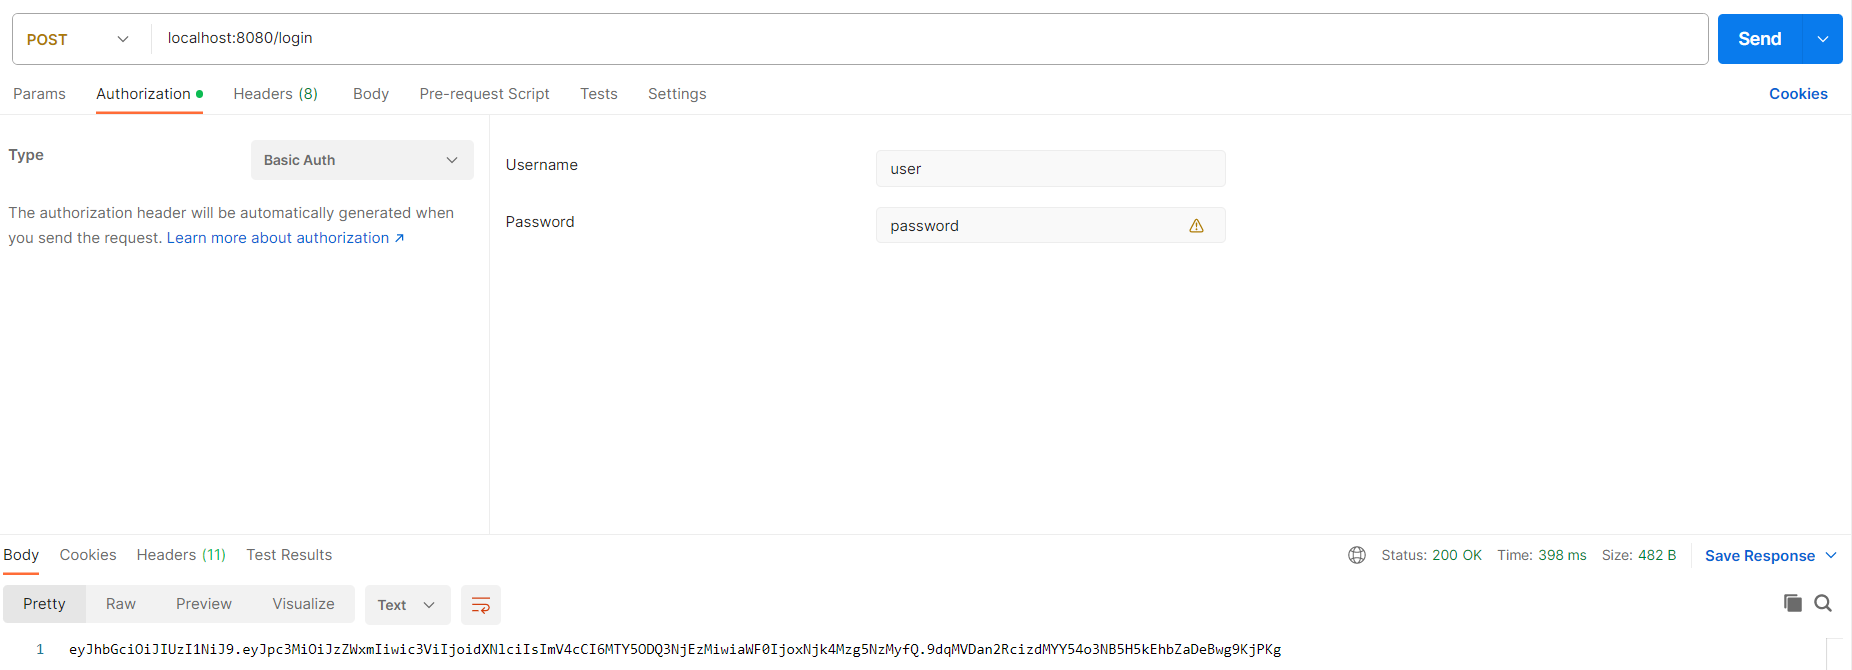 La requête est de type POST avec l’url localhost:8080/login. L’onglet “Authorization” spécifie un type Basic Auth avec le username “user” et le password “password”.